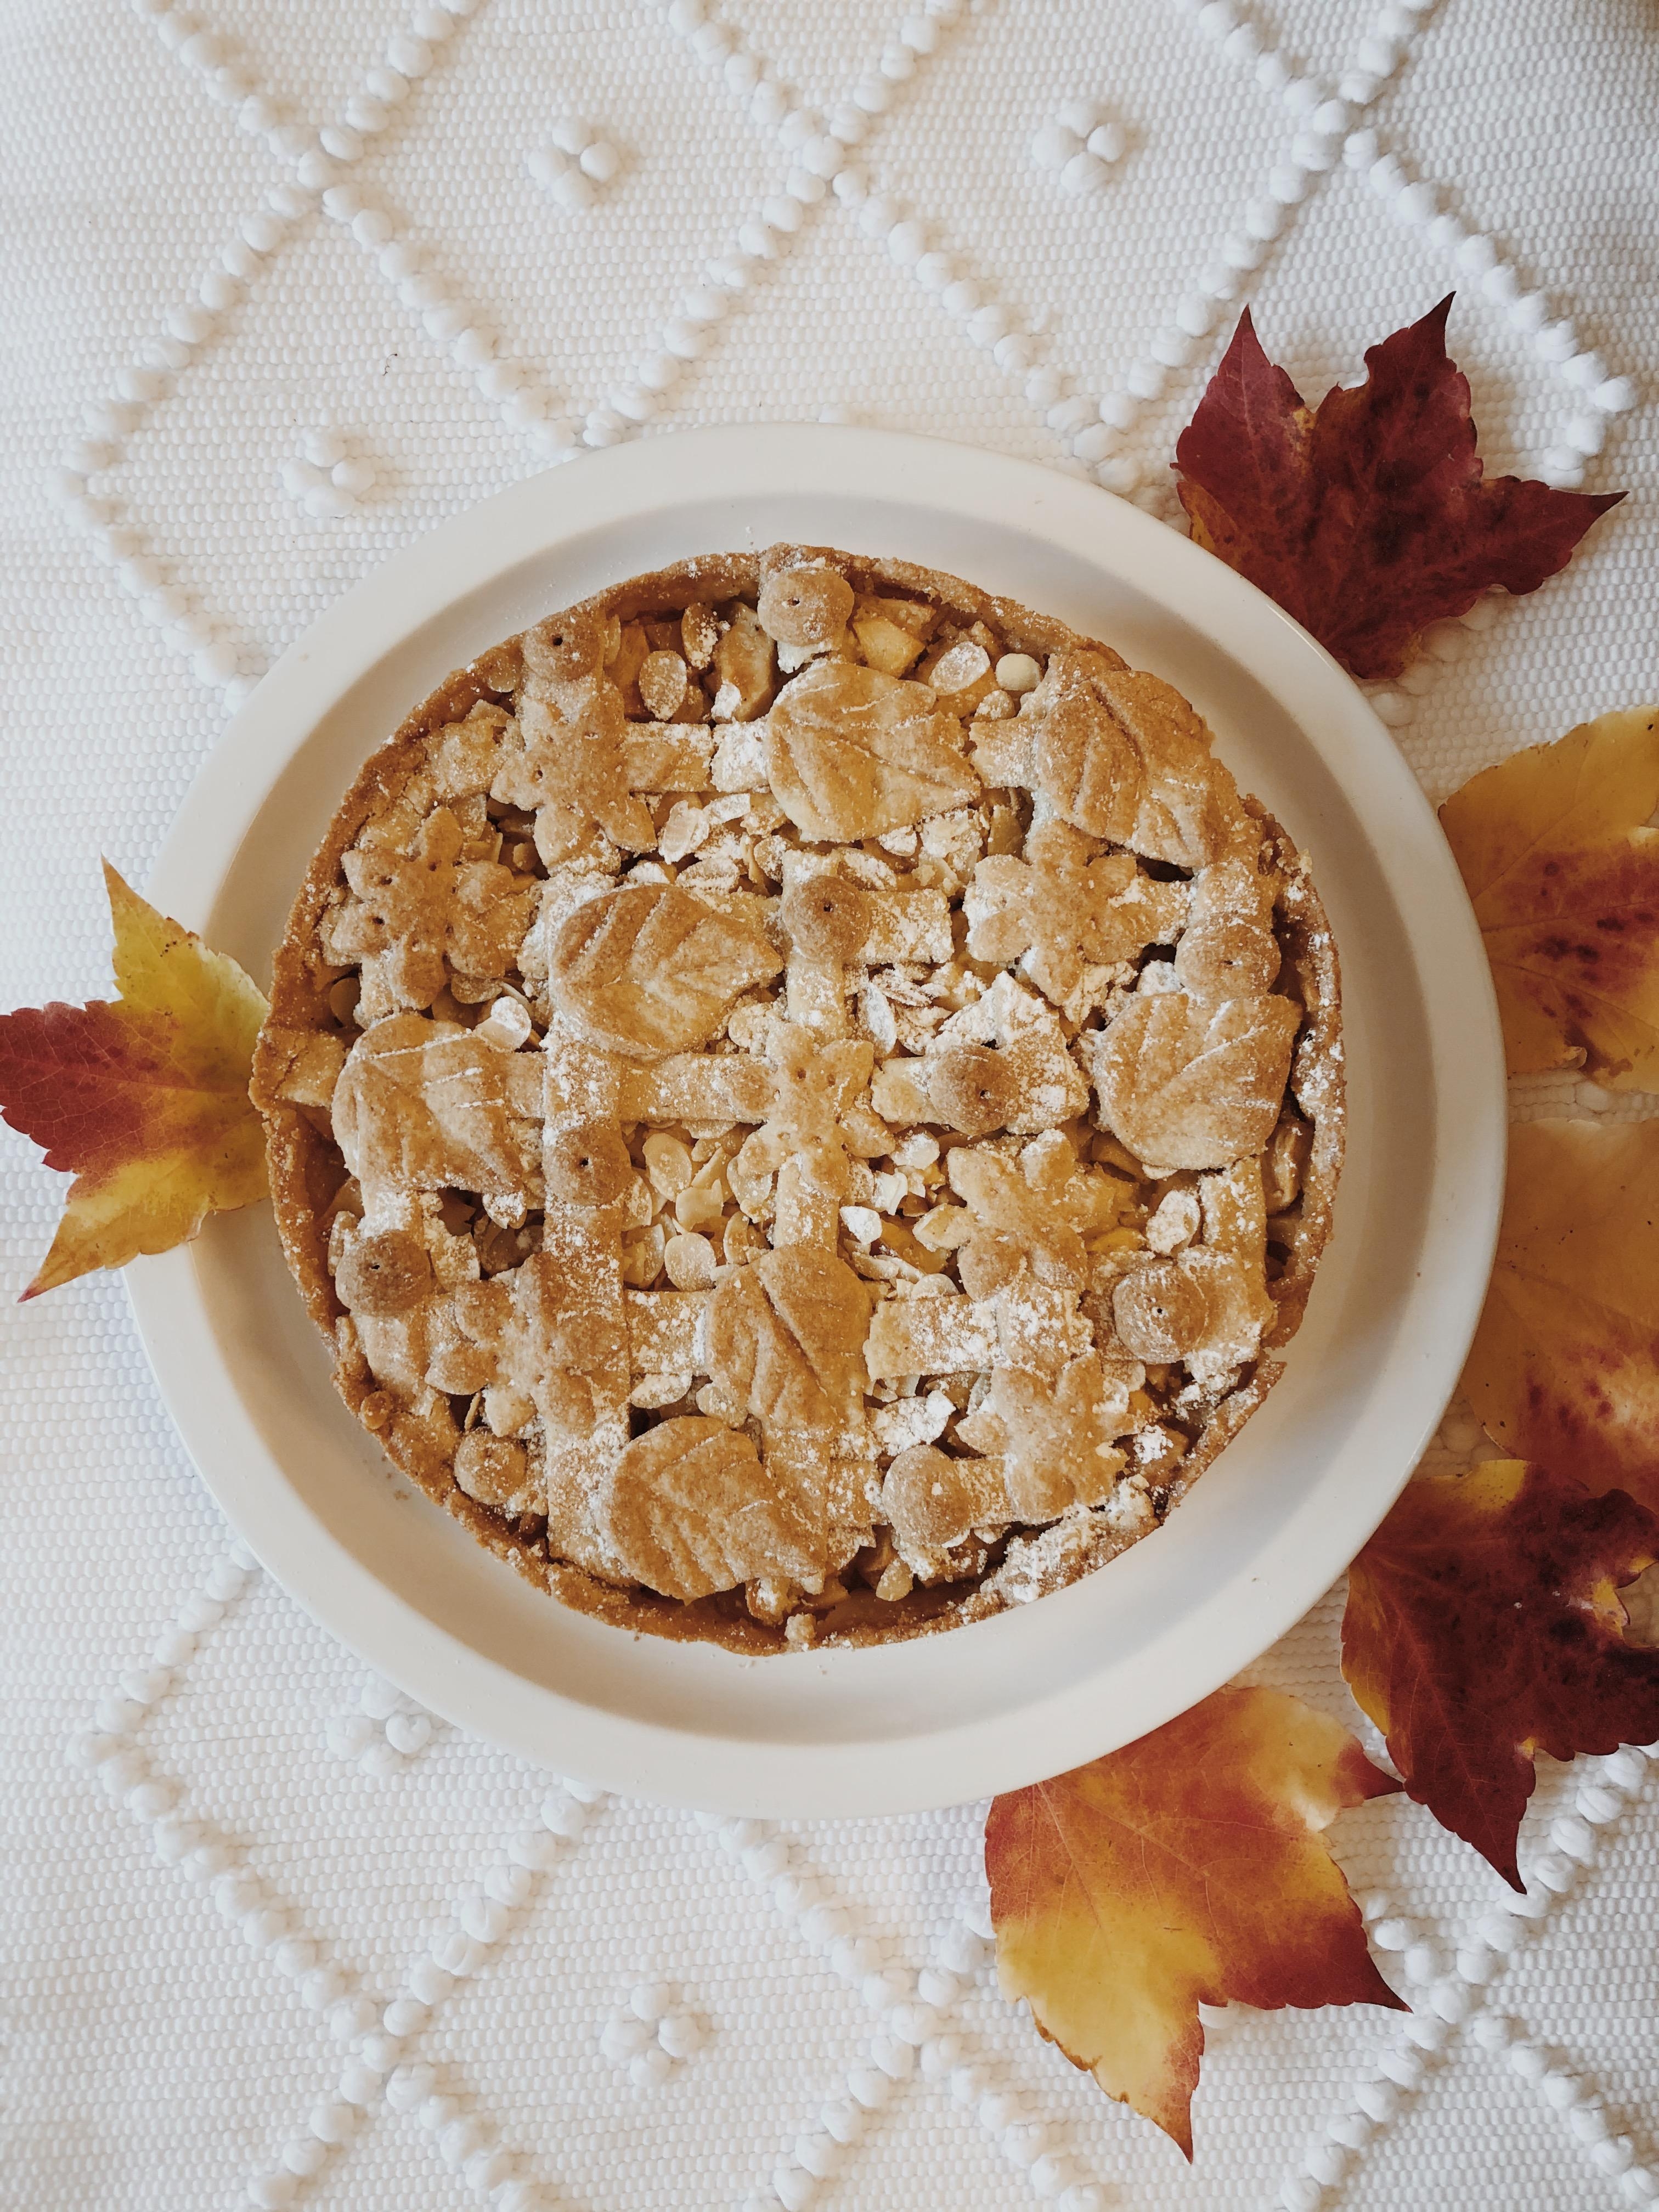 Ein bisschen herbstlich winterlicher Apple Pie gefälligst? Wer erkennt das Muster? #applepie #backen #homestyle